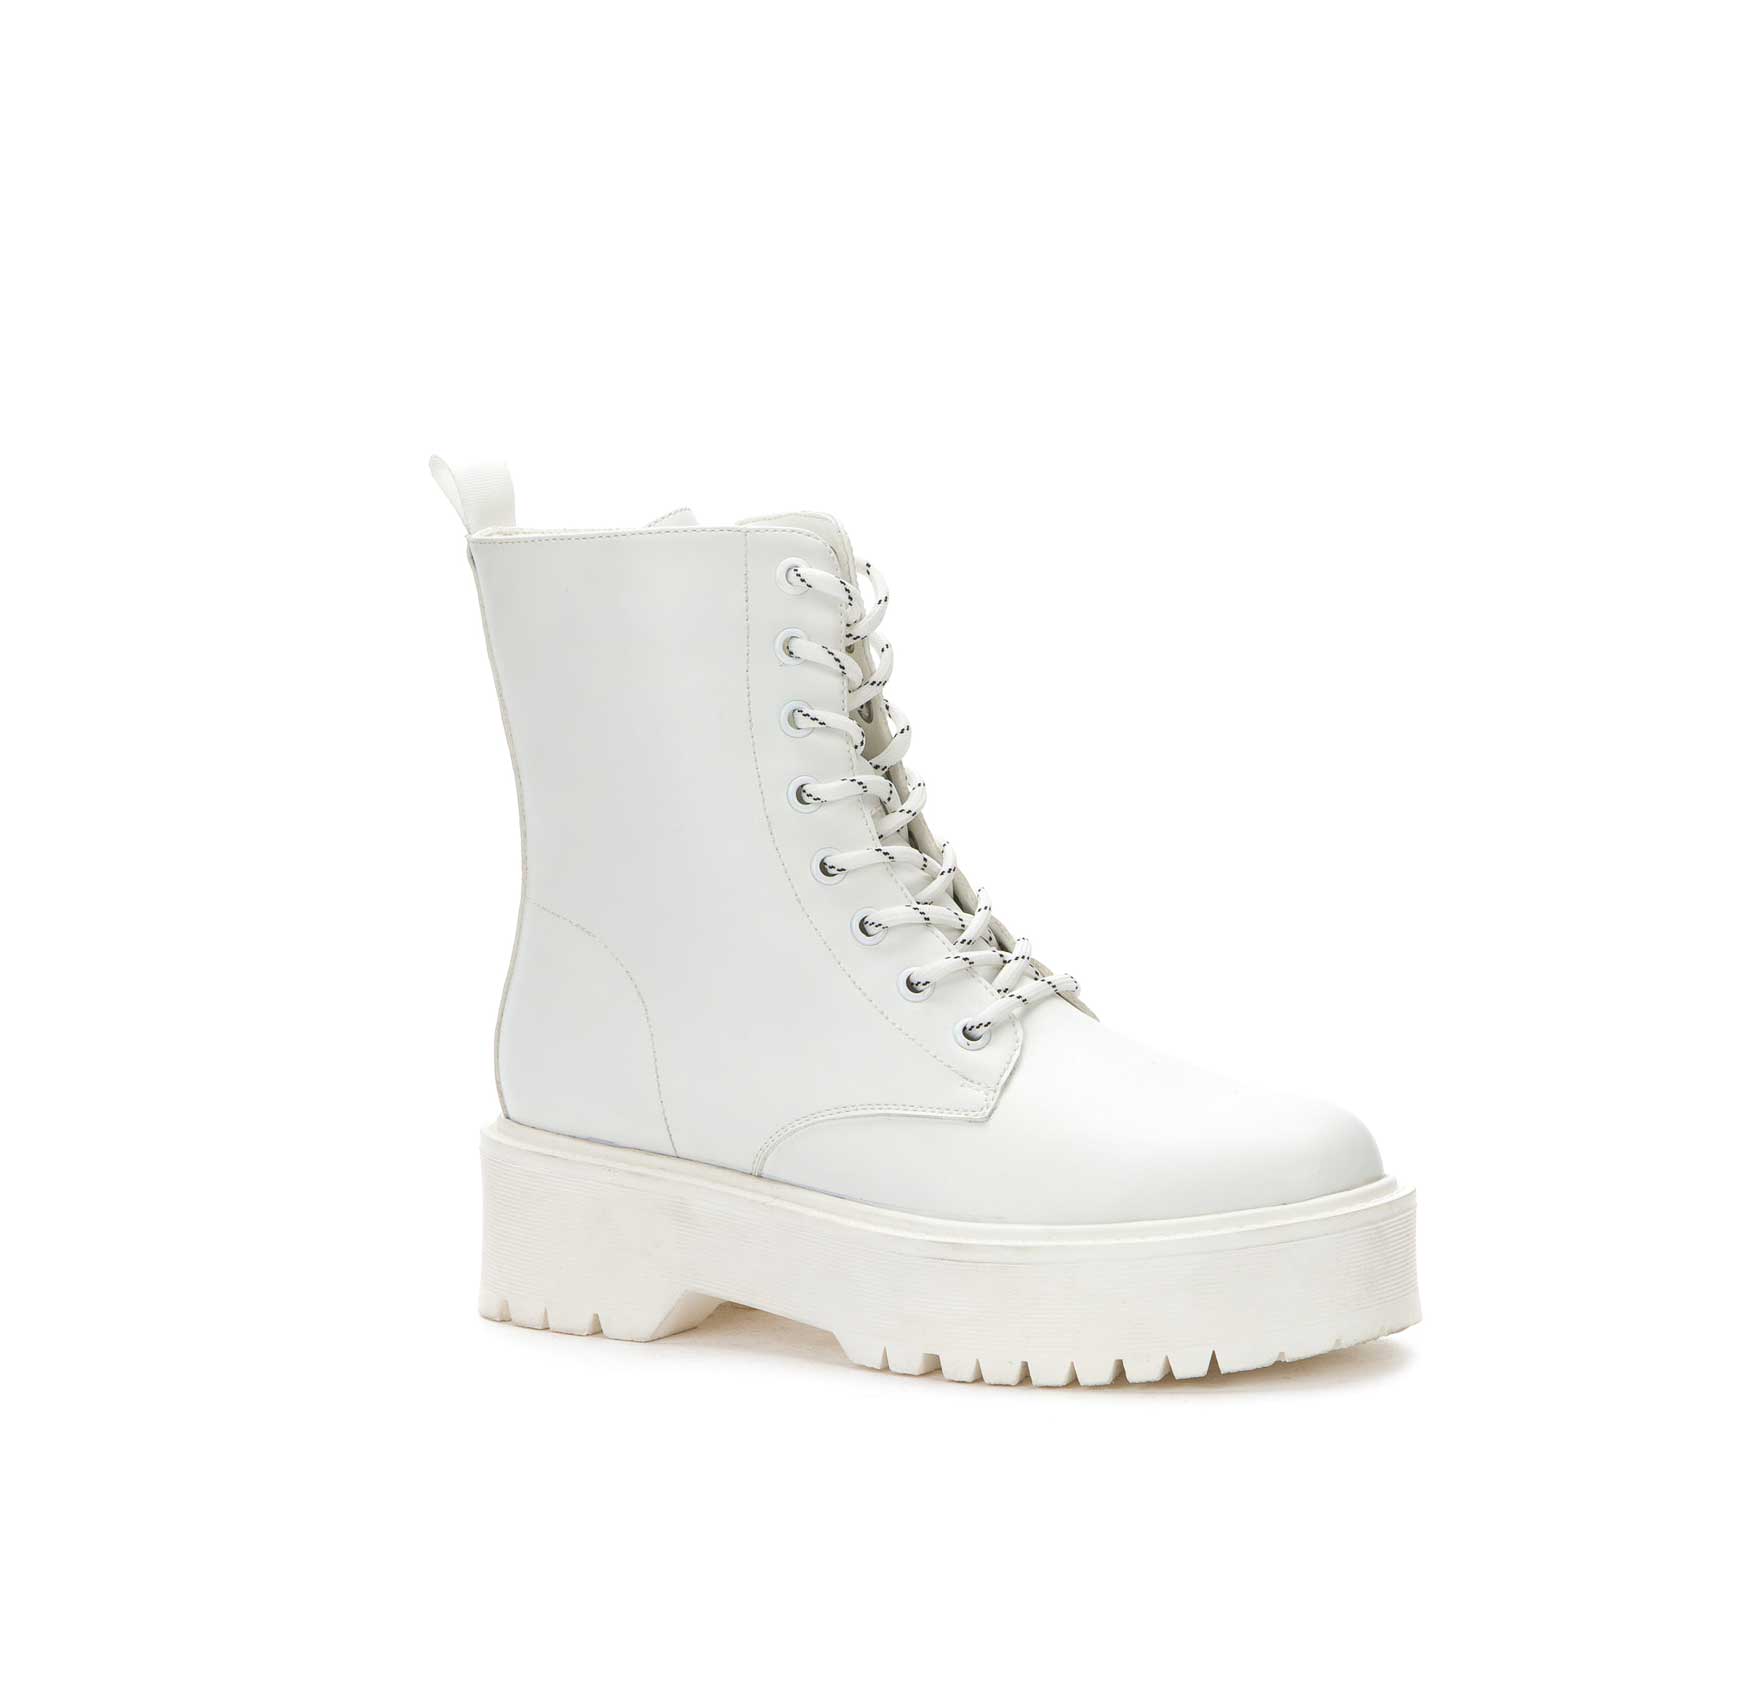 Ботинки зимние женские Keddo - 26485 купить в интернет-магазине с доставкой по России